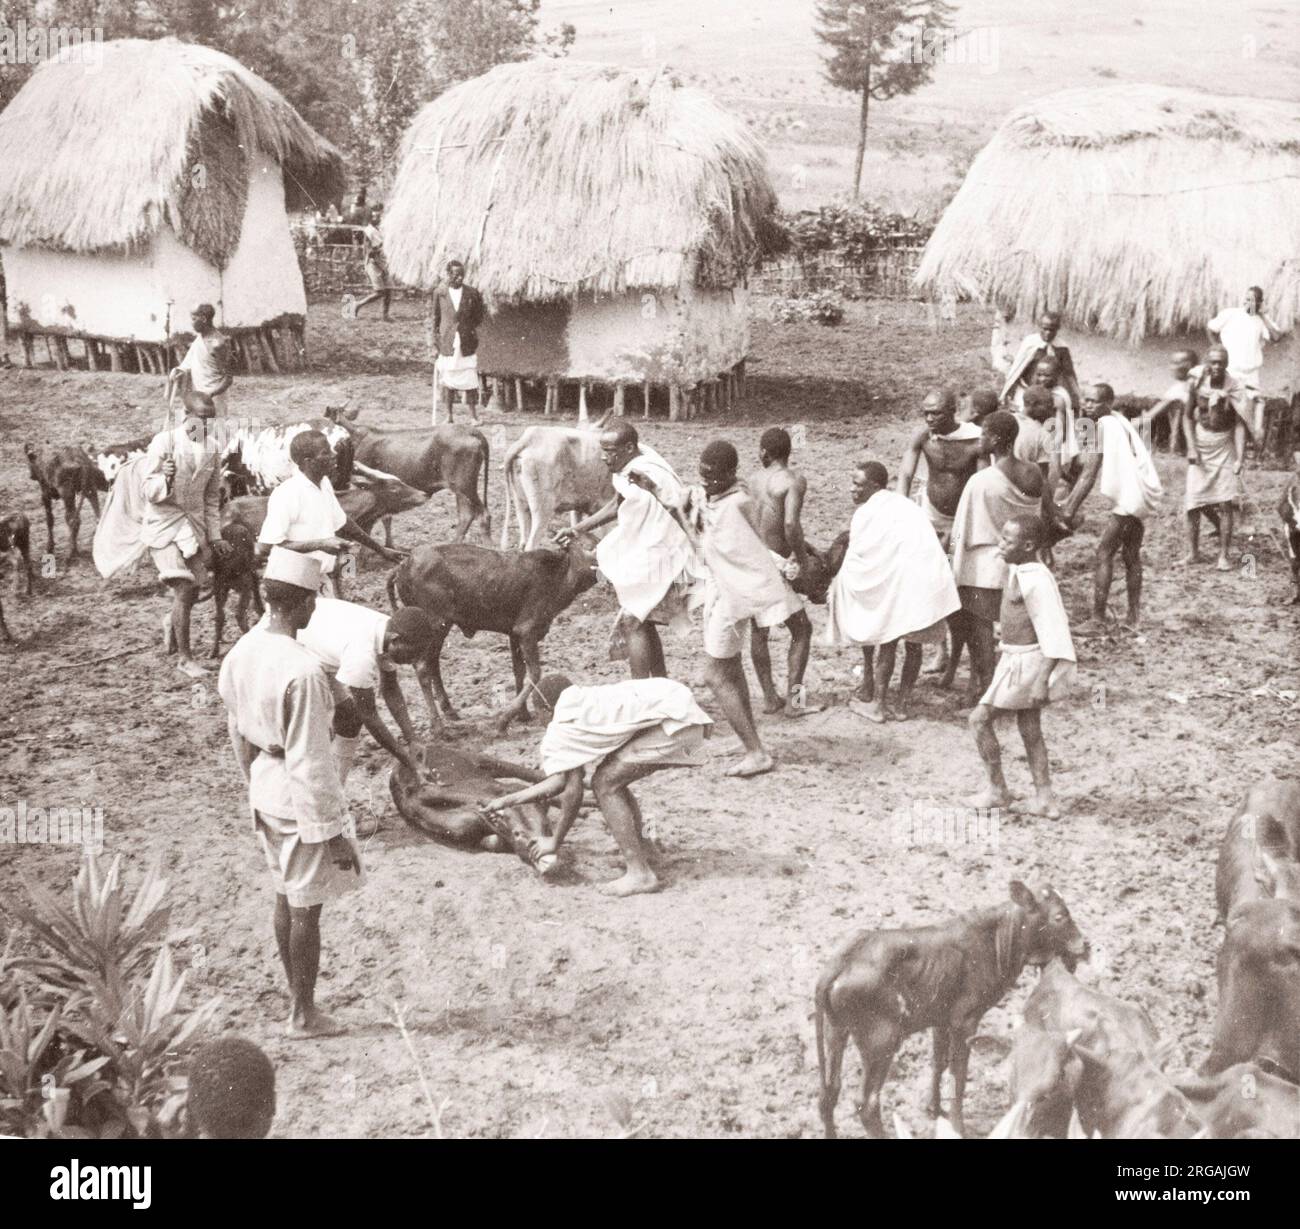 Ostafrika - Uganda Impfkampagne der Briten gegen Tsetsefliegenerkrankungen bei Rindern - Rindern und Hirten von einem während des Zweiten Weltkriegs in Ostafrika und im Nahen Osten stationierten Rekrutierungsbeamten der britischen Armee Stockfoto